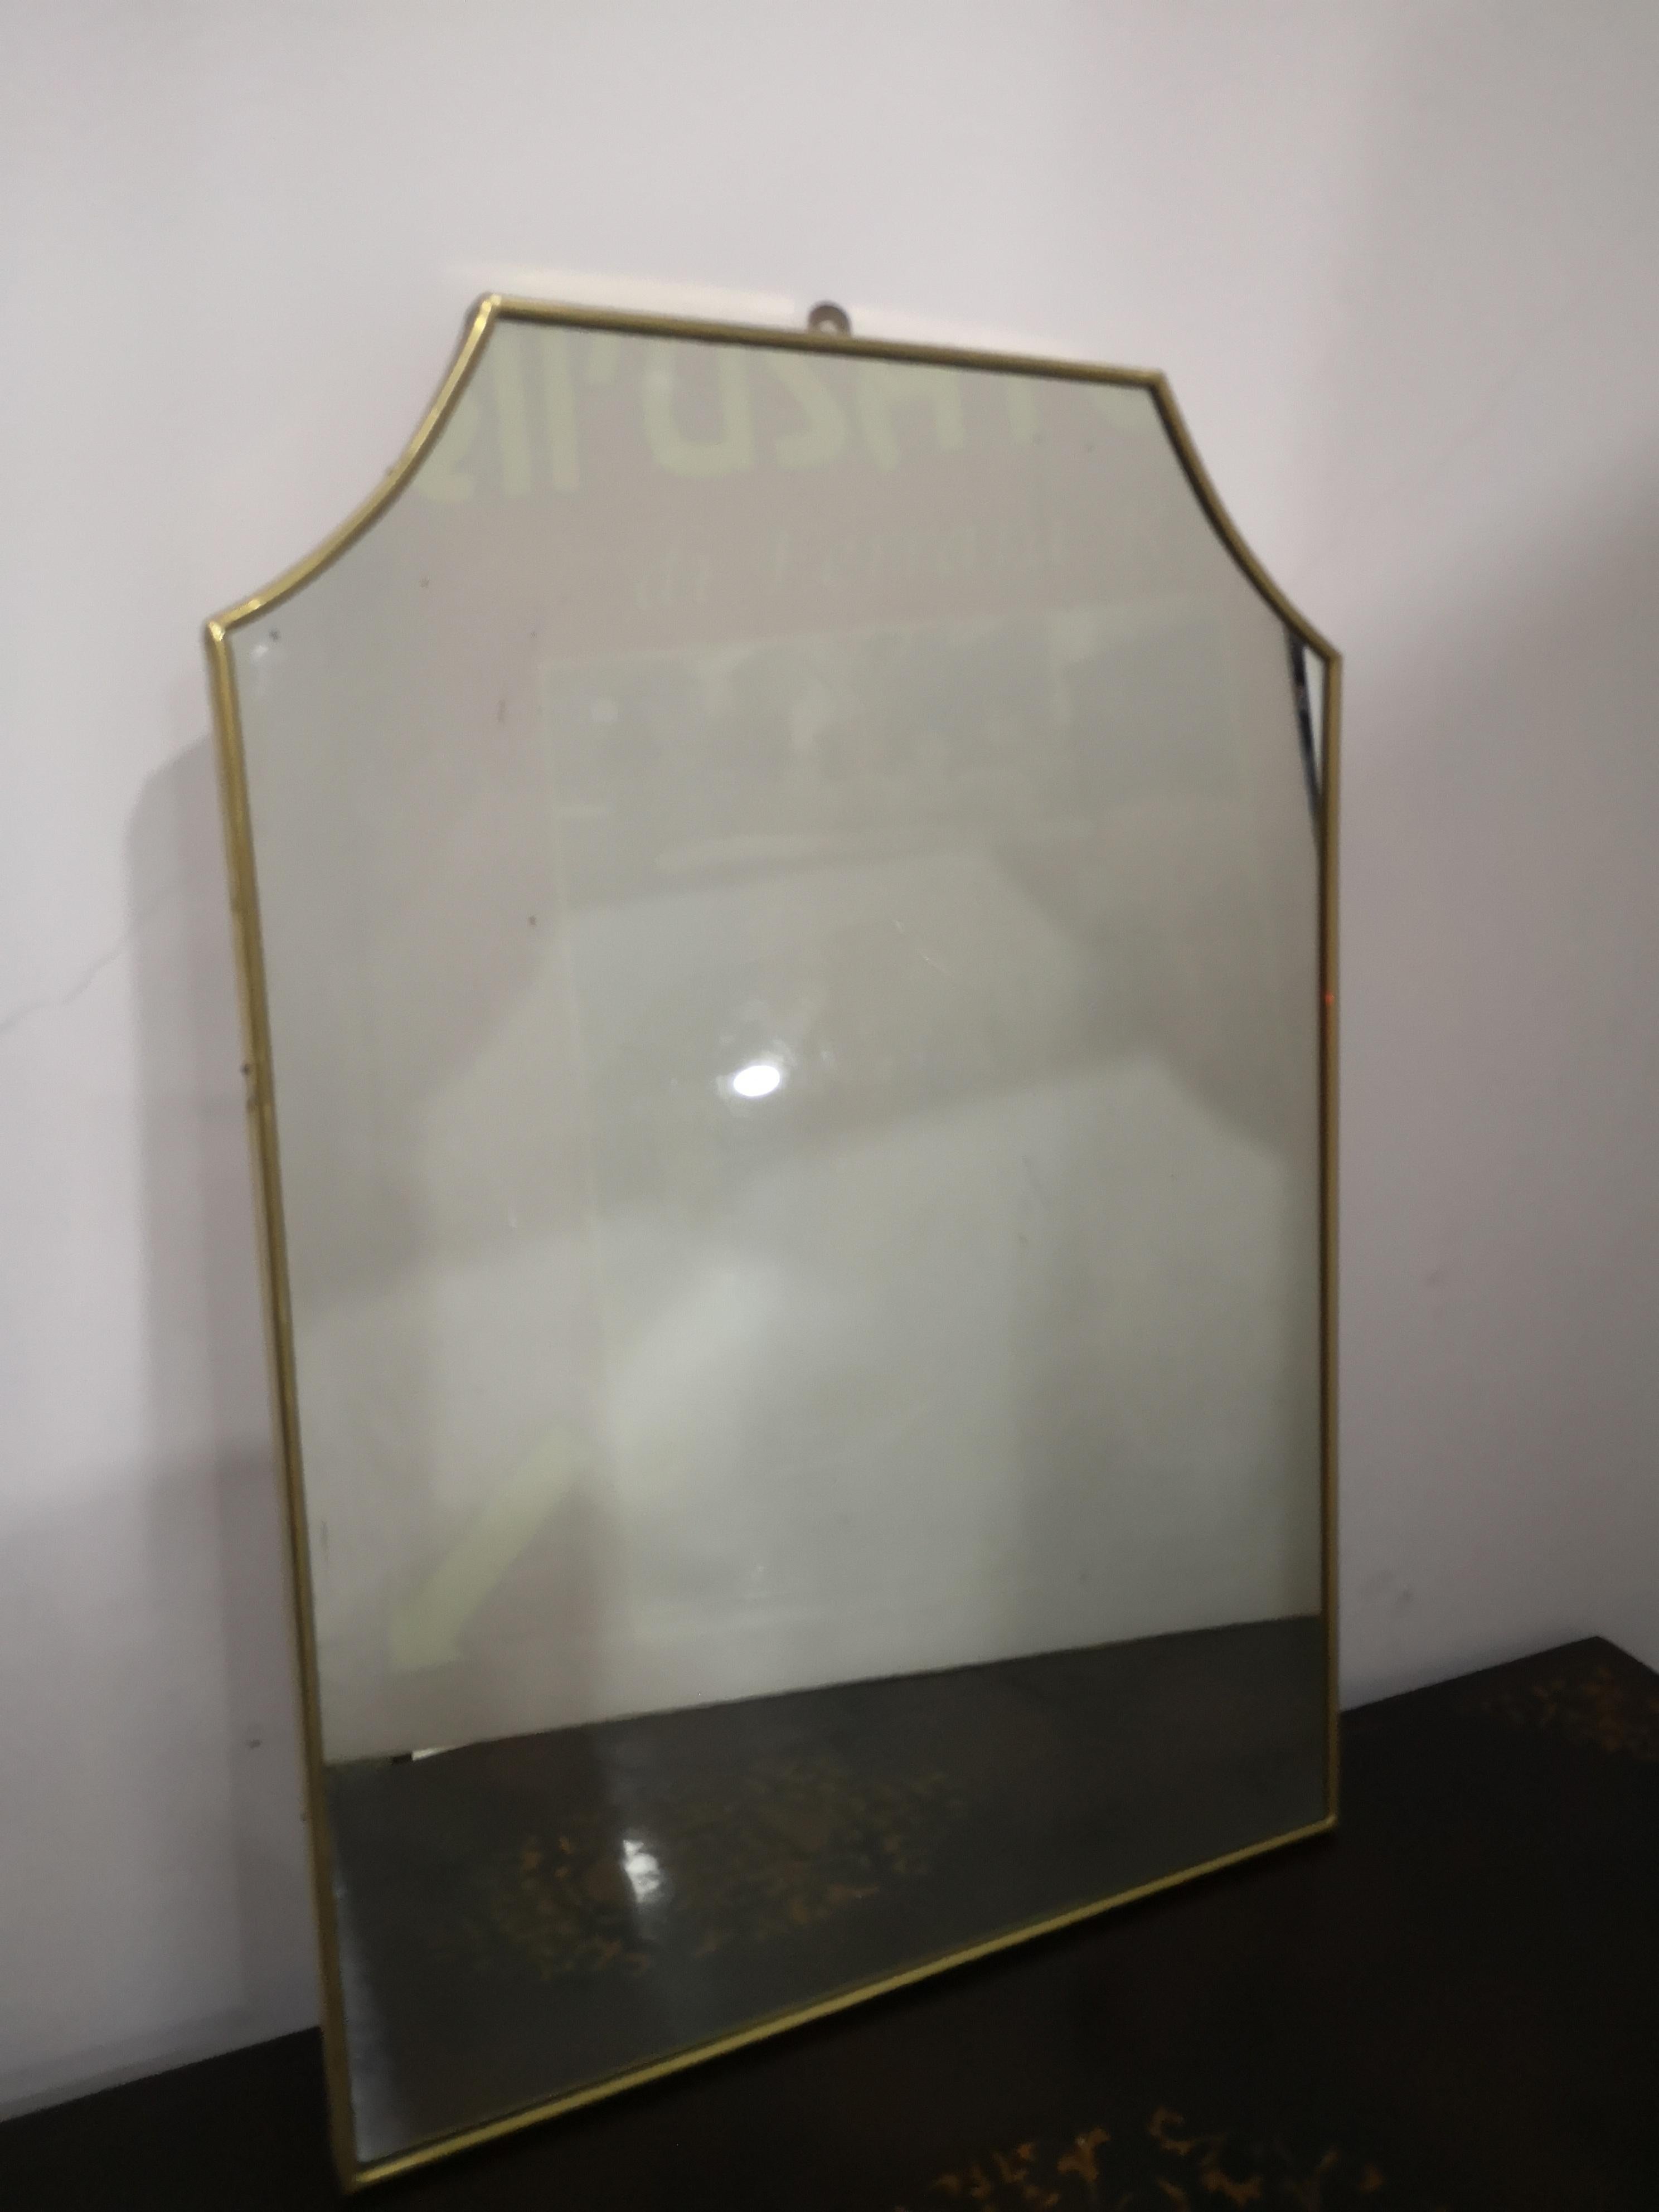 Specchio da parete in ottone anni 50 
in buone condizioni 
Lo specchio misura:
in altezza     cm 70
in larghezza cm 50